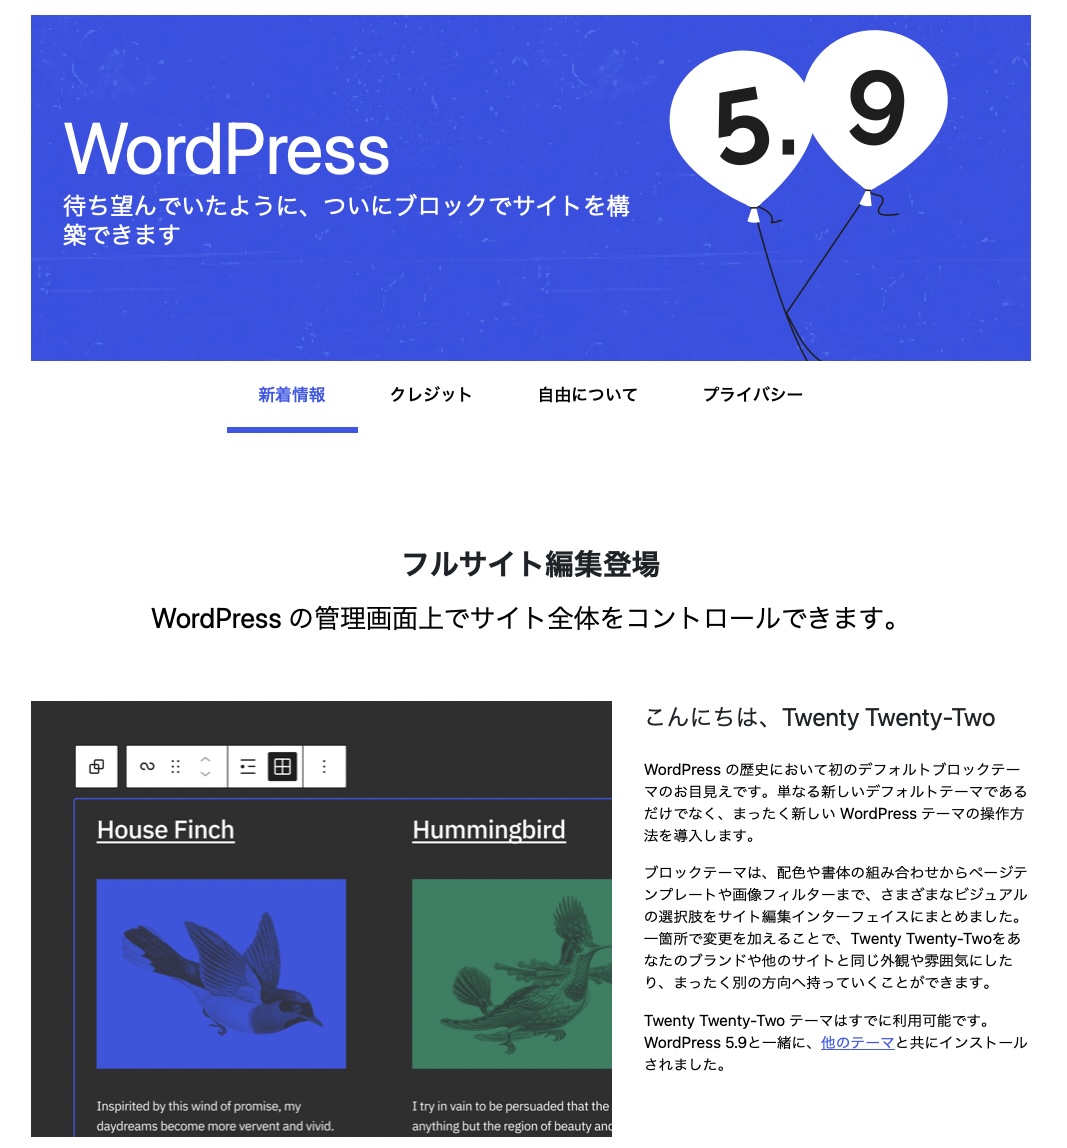 WordPressを5.9とテーマをTwenty Twenty-Twoに変更